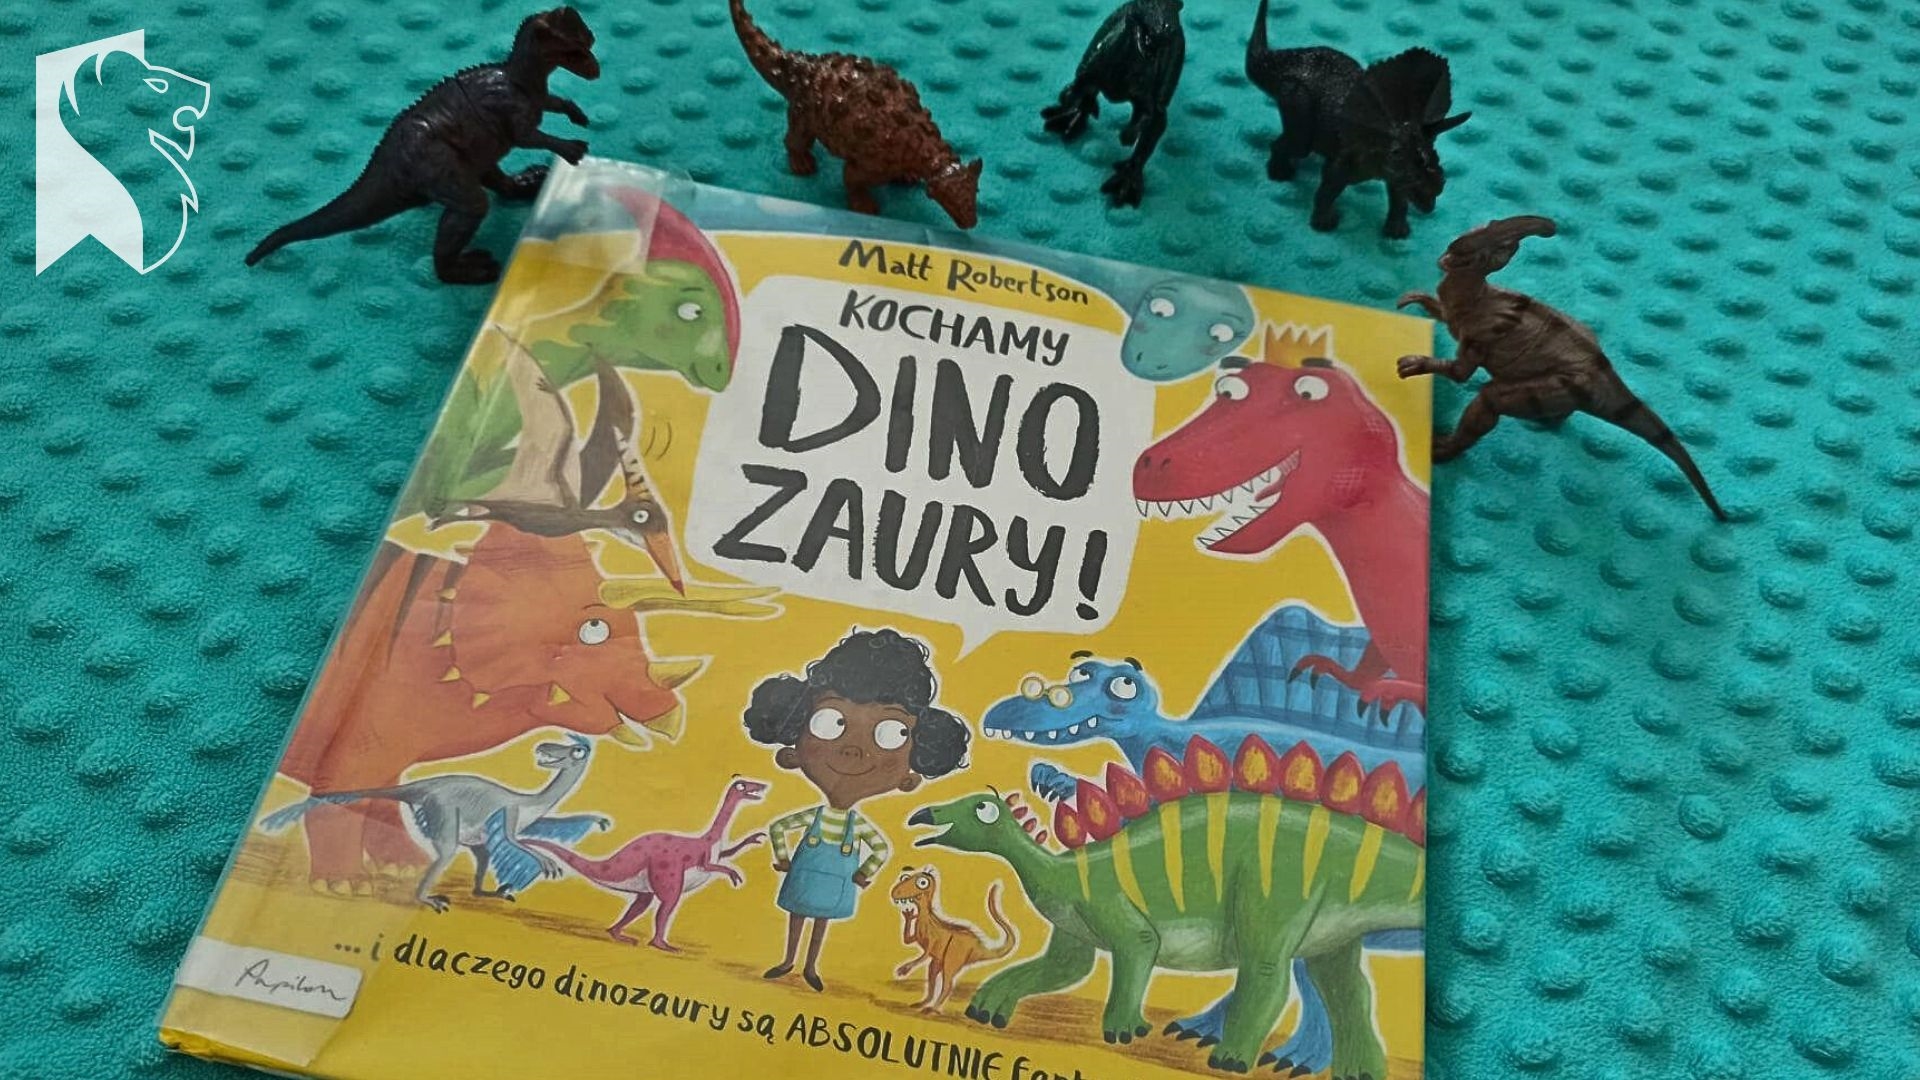 Na niebieskim kocyku książka Matta Robertsona pt. Kochamy dinozaury. Nad książką 5 małych figurek dinozaura.